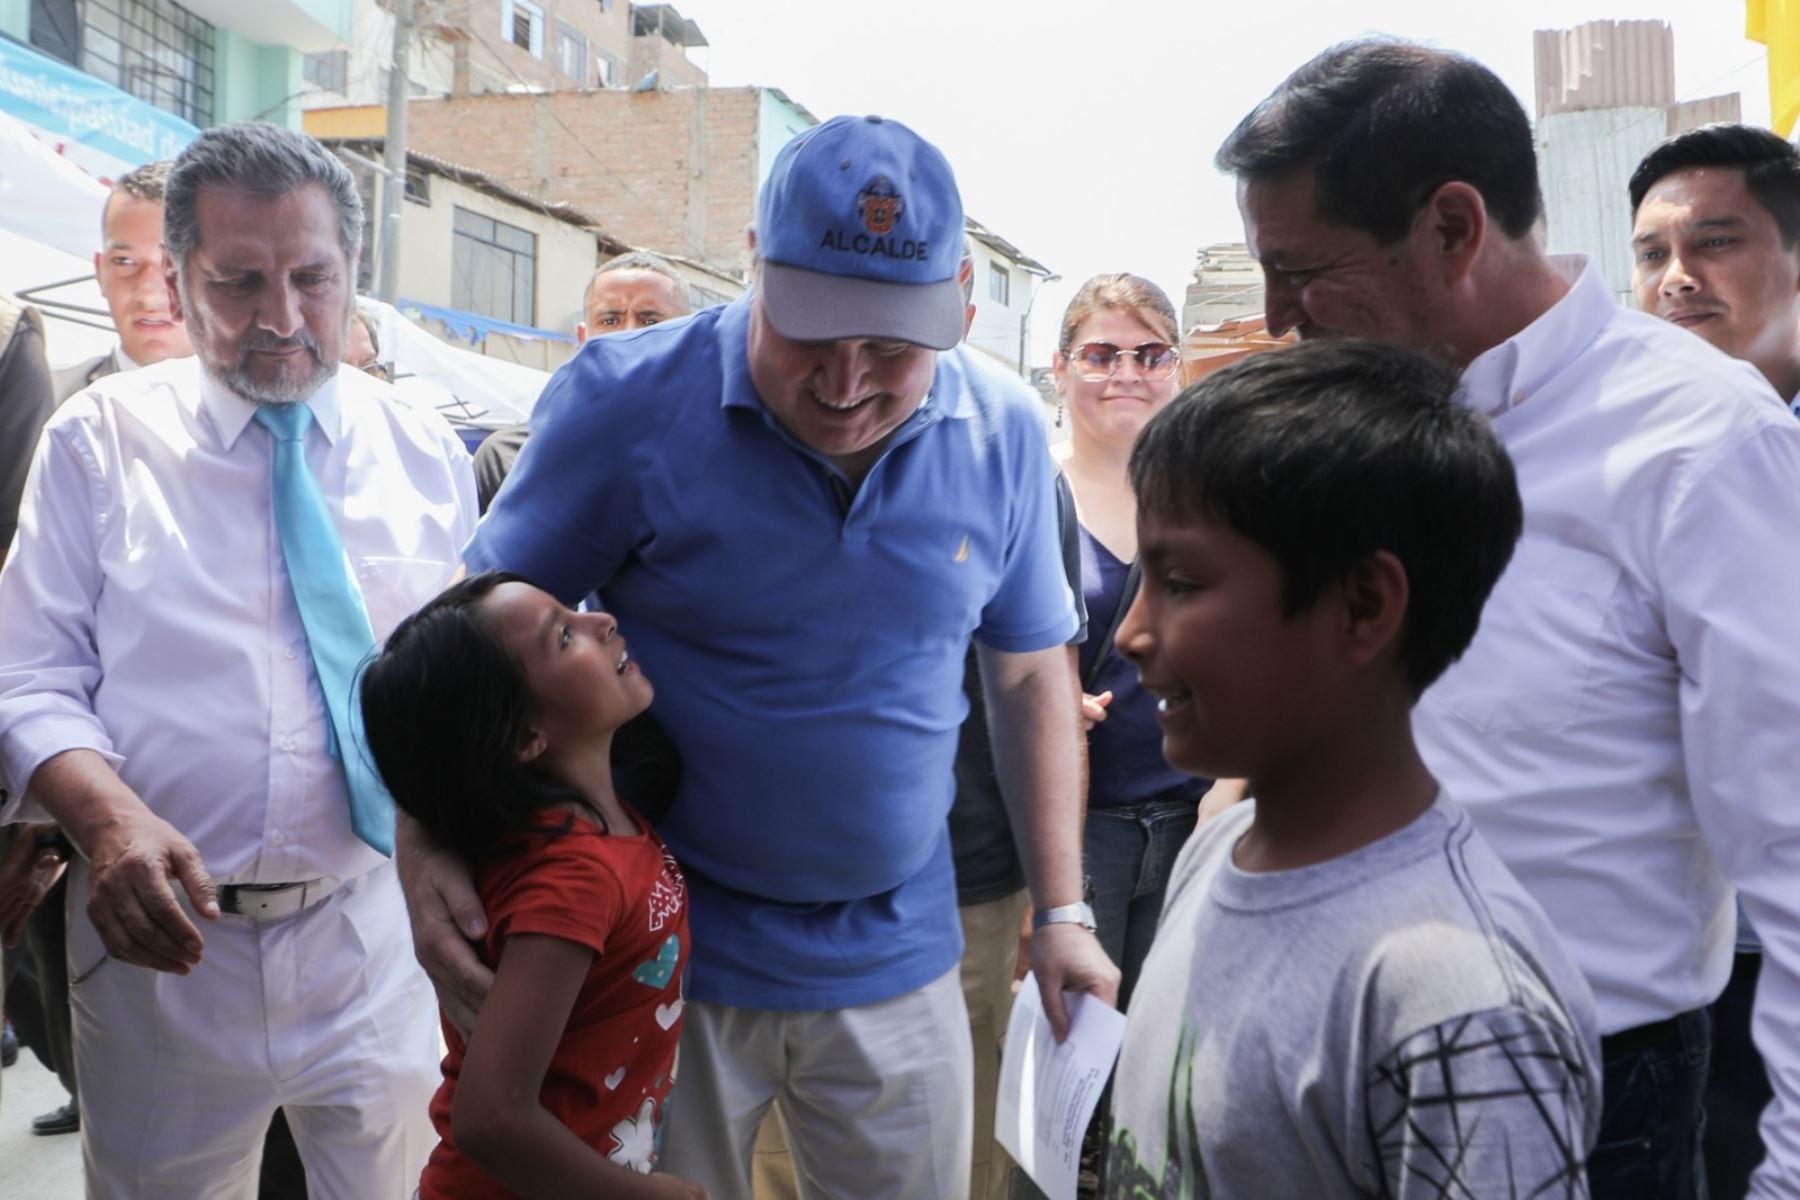 Alcalde de Lima Rafael López Aliaga anunció que existirá un Hospital de la Solidaridad permanente en el Cerro el Pino.

Foto: ANDINA/Difusión